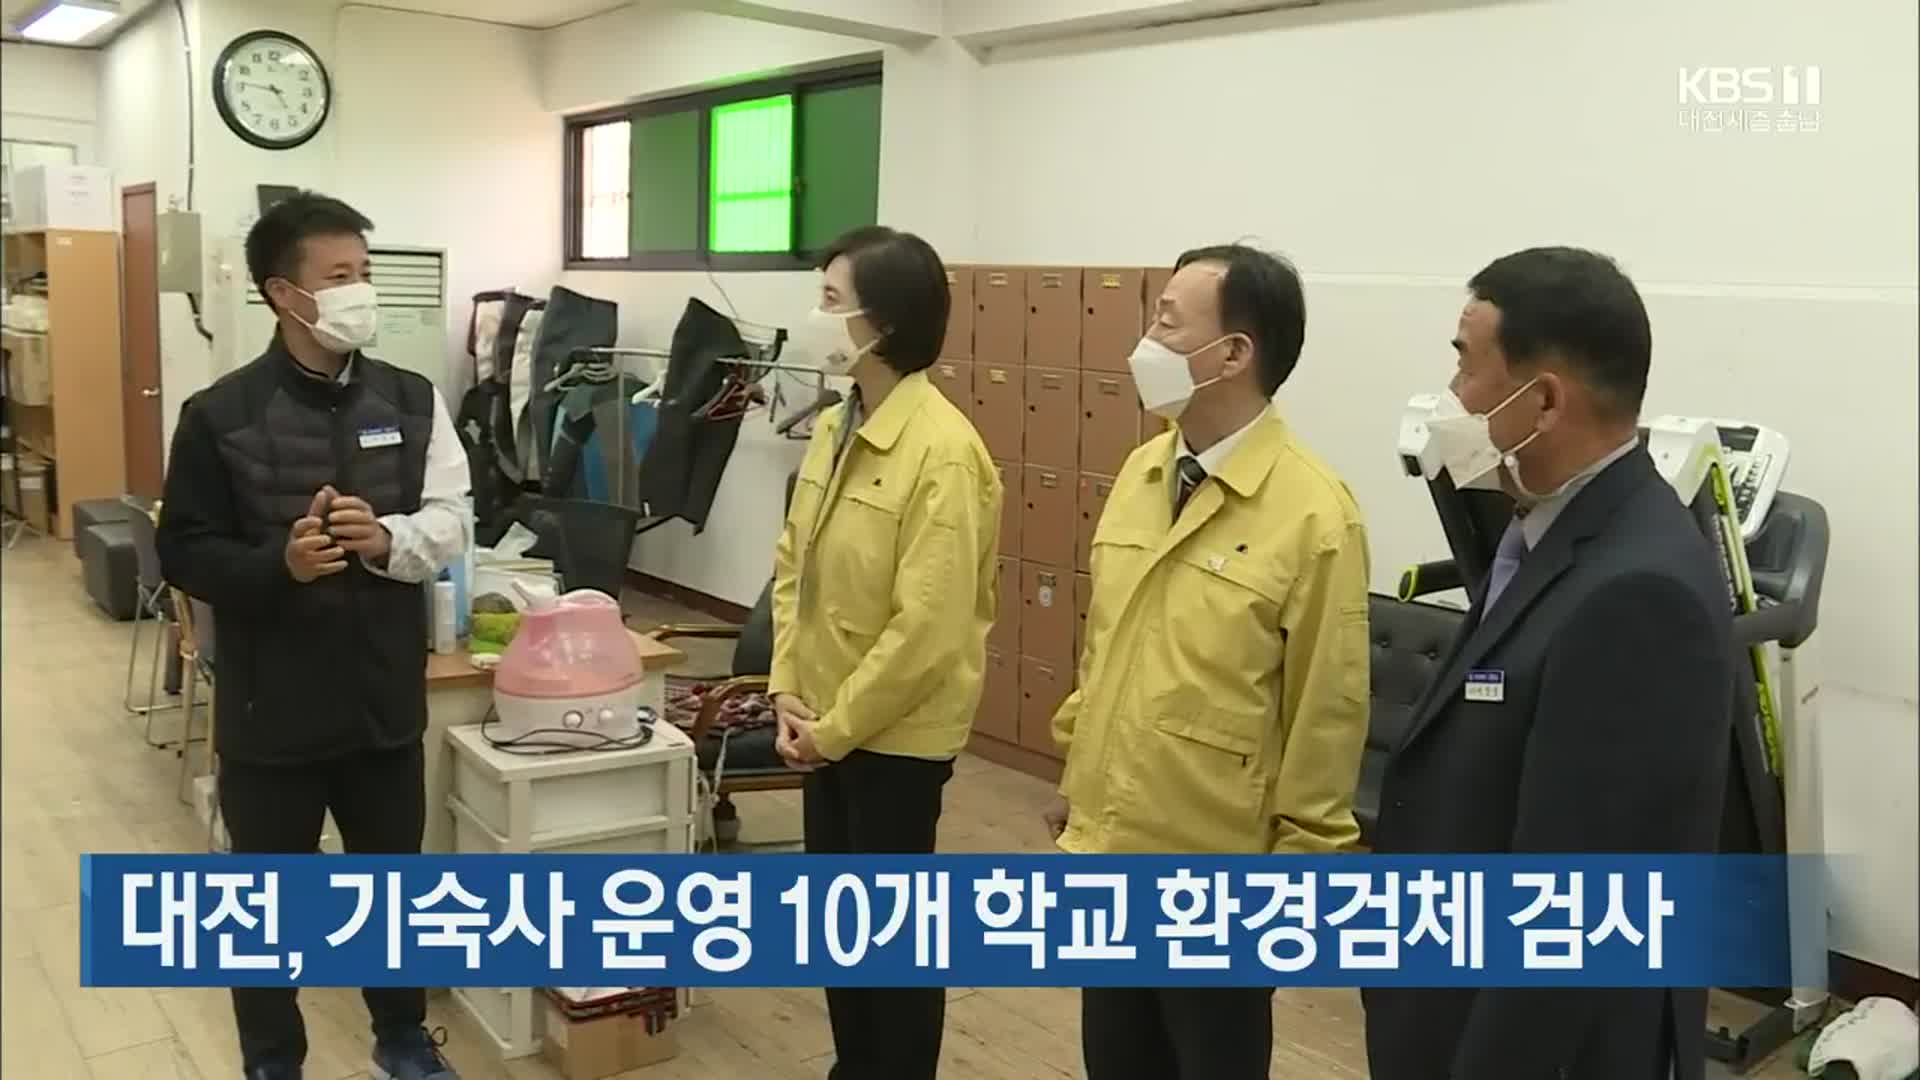 대전, 기숙사 운영 10개 학교 환경검체 검사